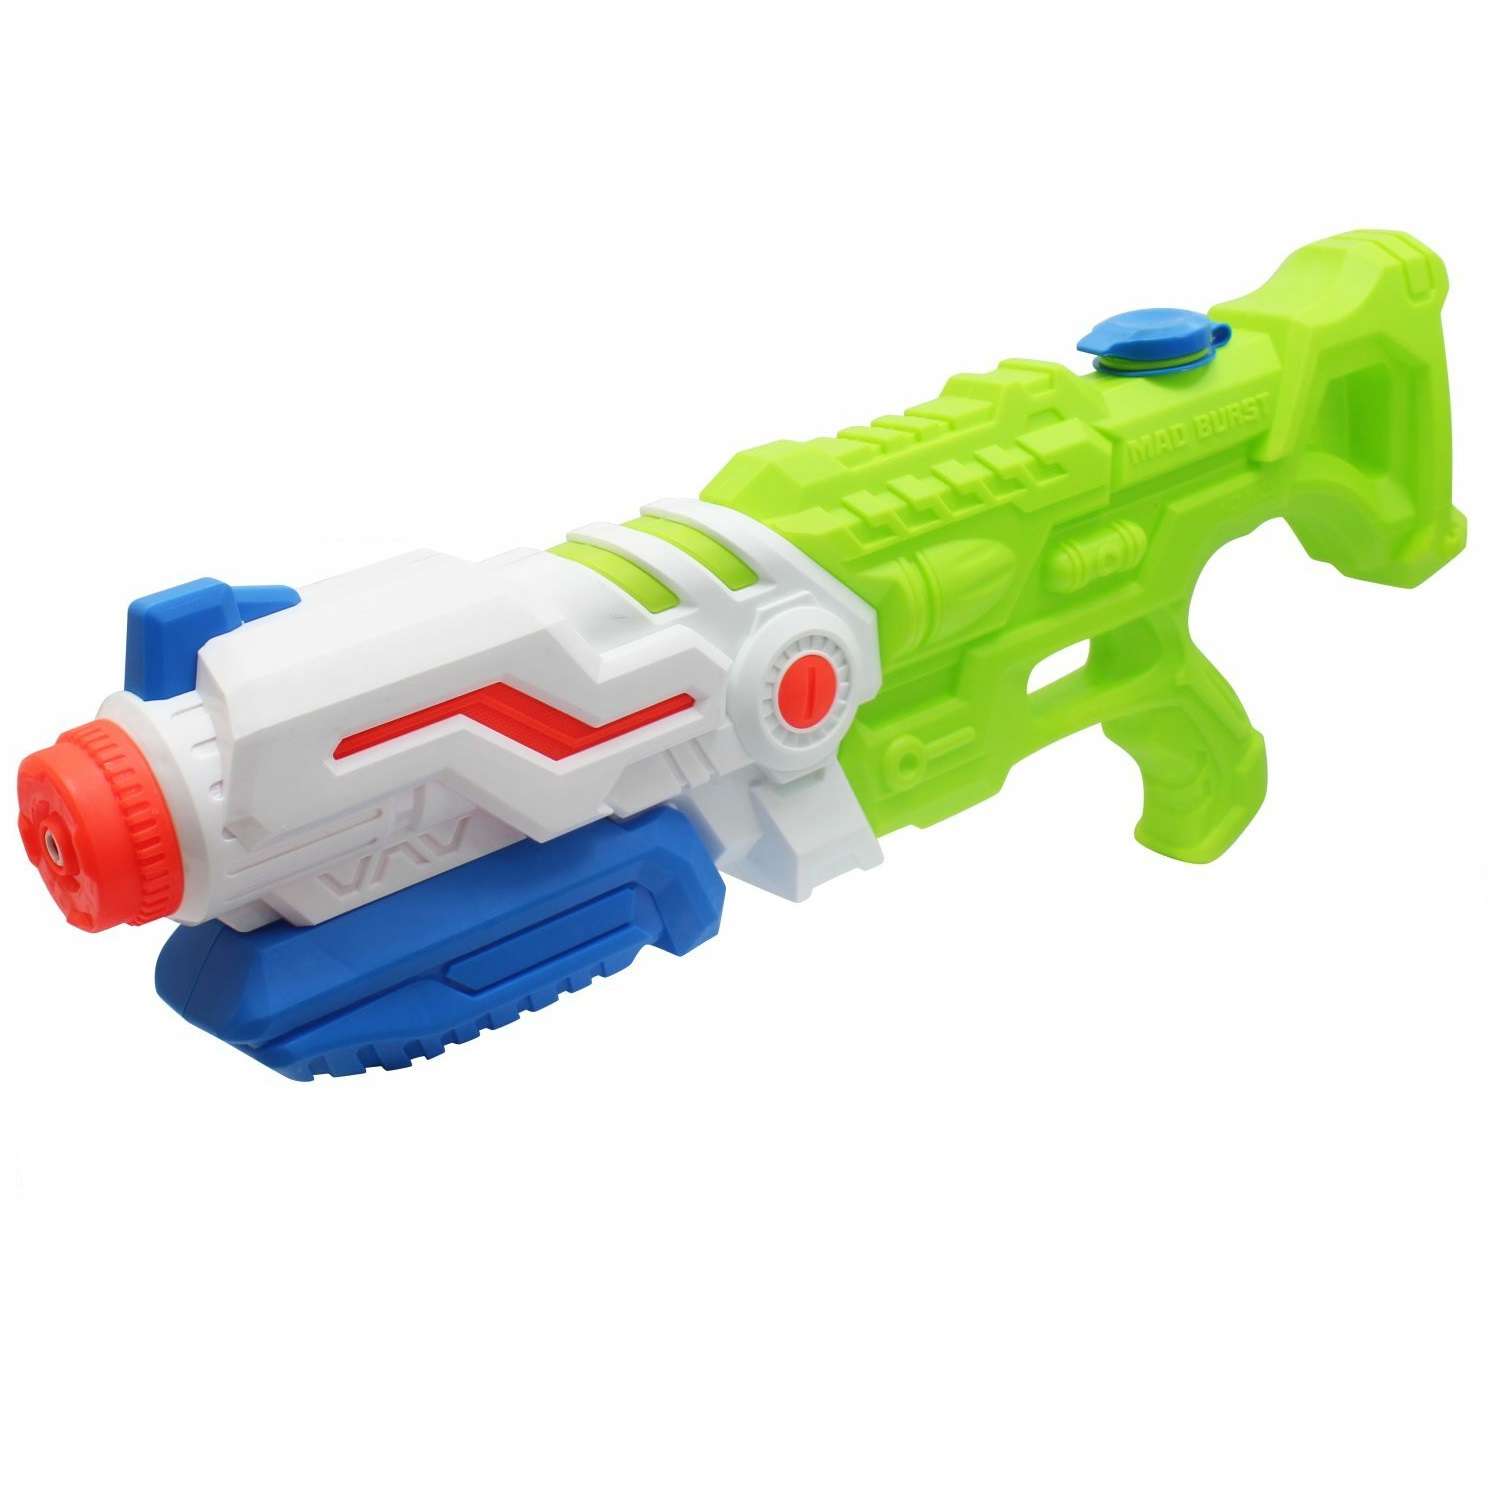 Водяной пистолет Аквамания 1TOY Бластер детское игрушечное оружие для мальчиков и девочек игрушки для улицы и ванны - фото 1